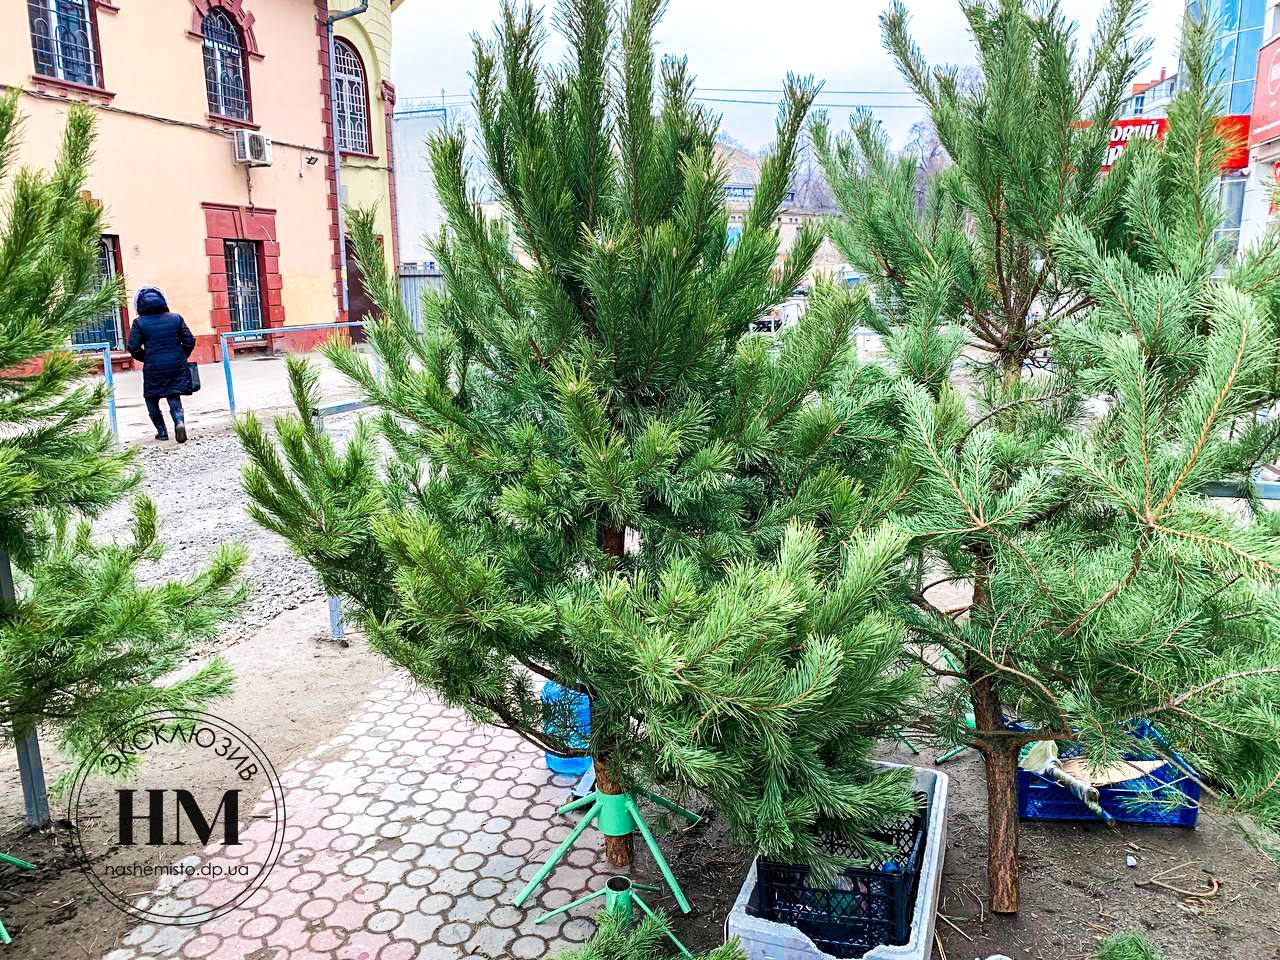 Купить елку на «Озерке» 2021: цена (Фото) - новости Днепра